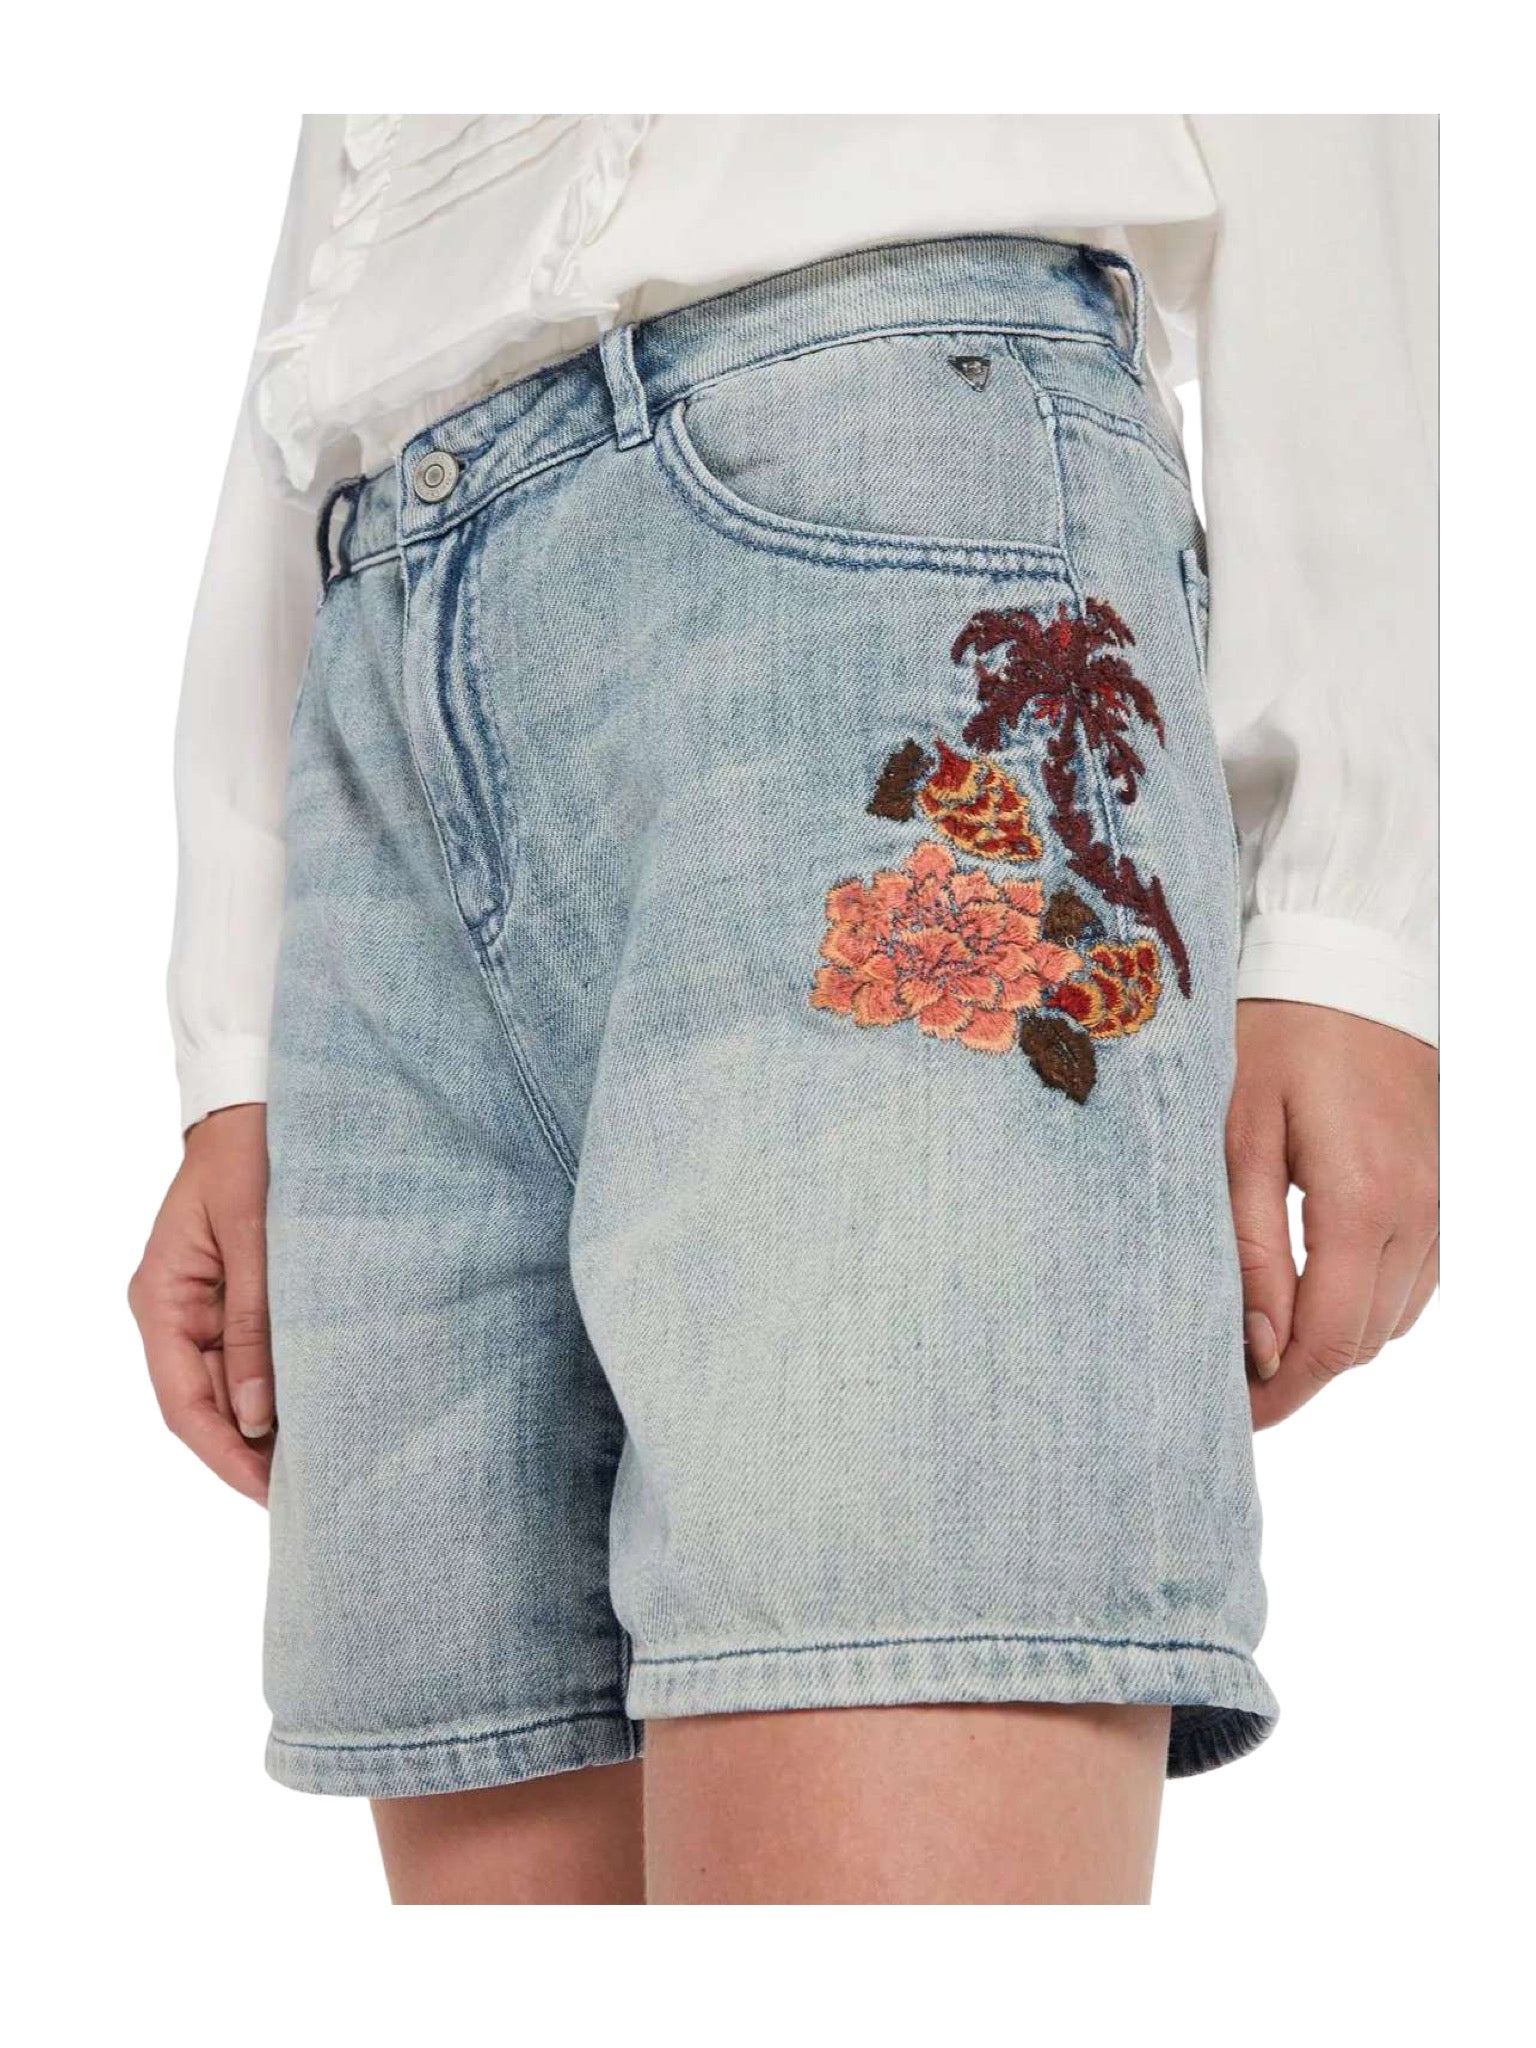 Jean shorts με κεντημένο σχέδιο στις τσέπες